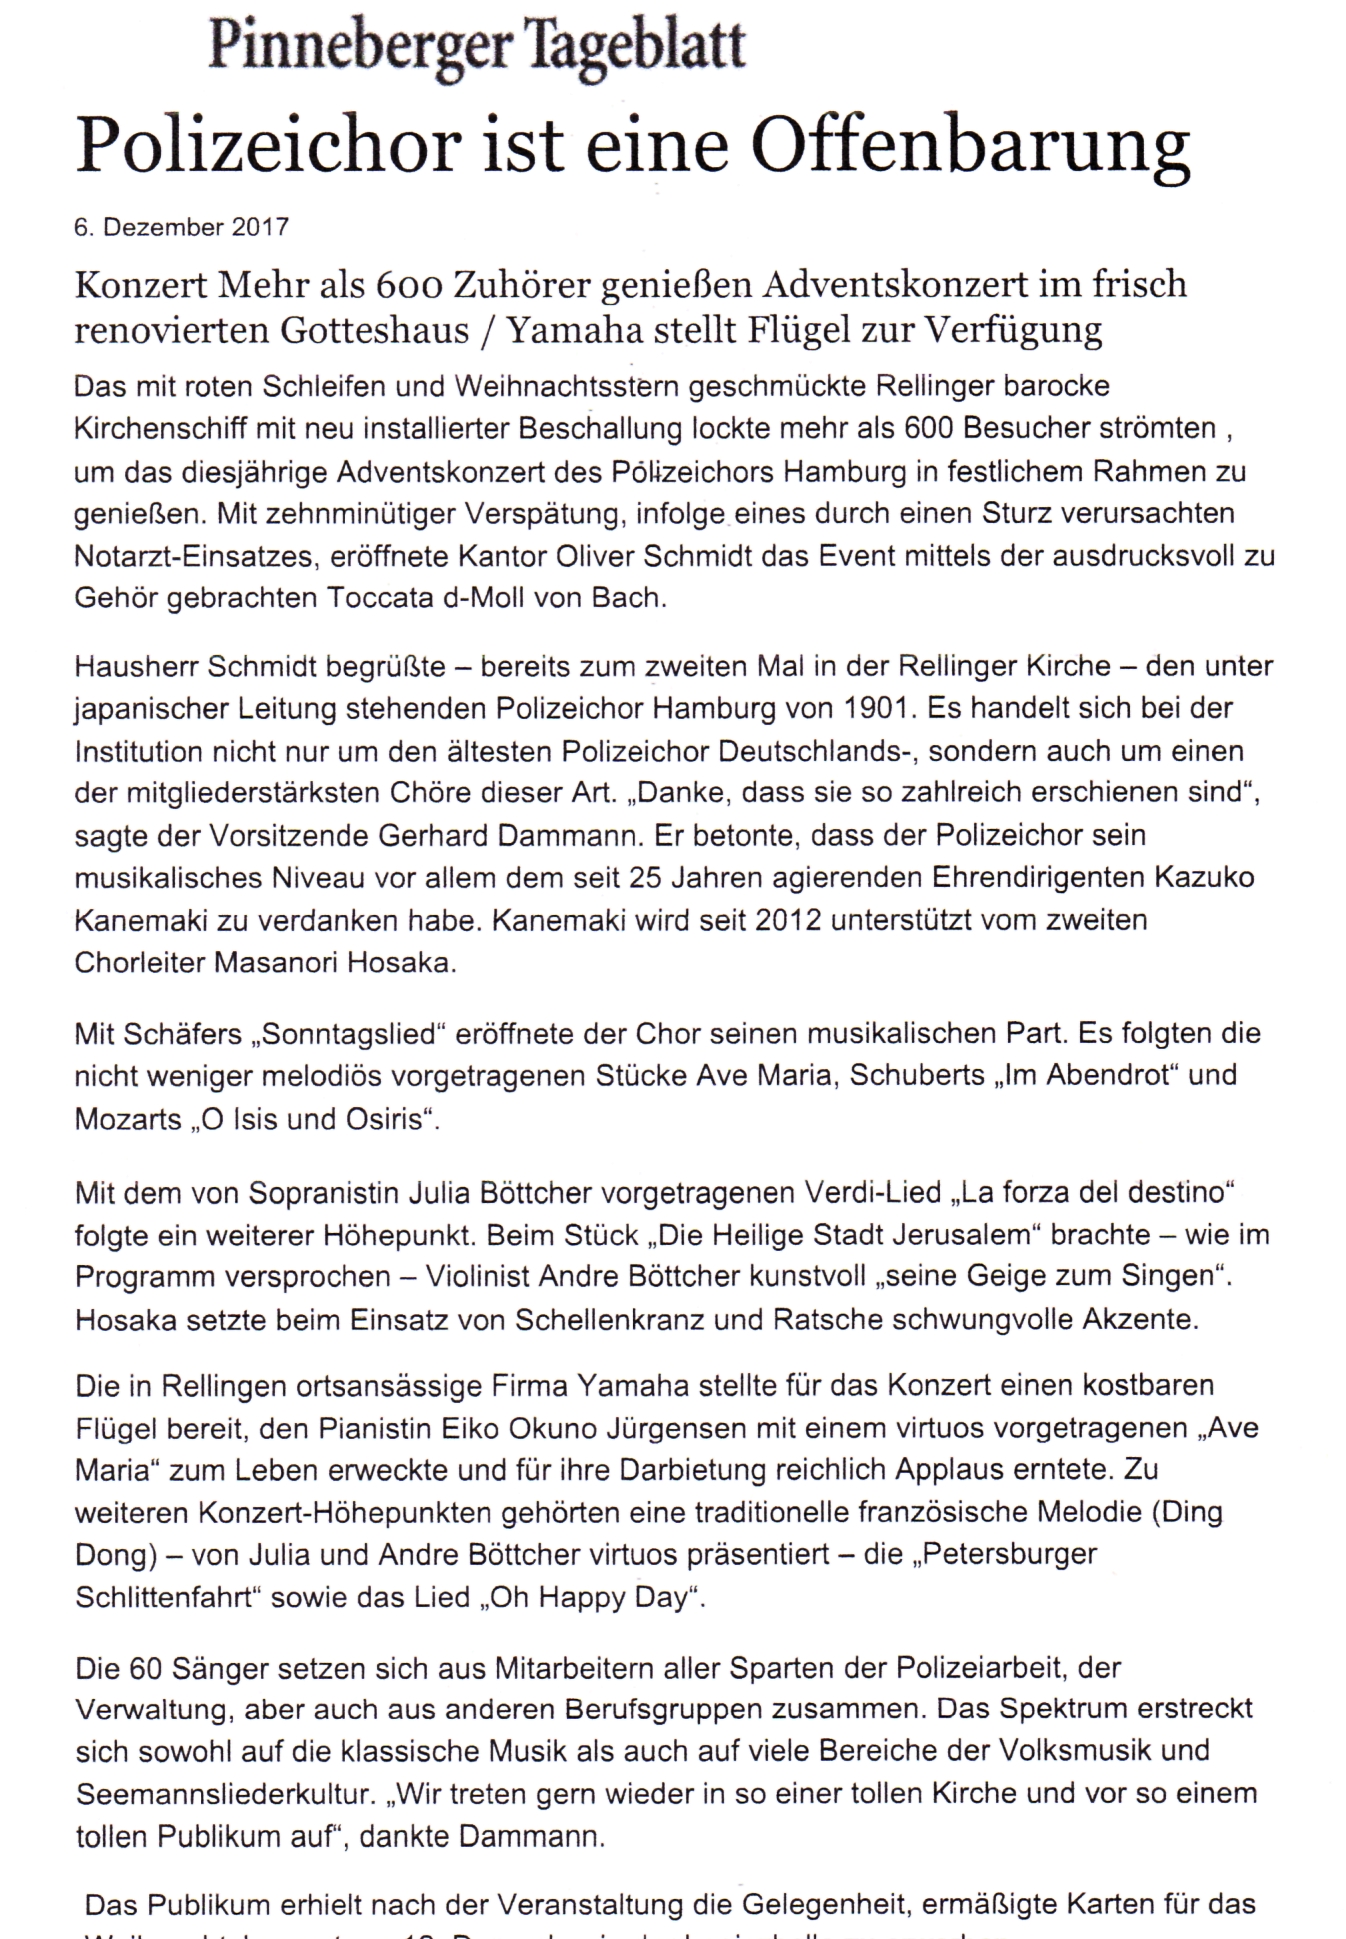 Rellingen2017_Tageblatt